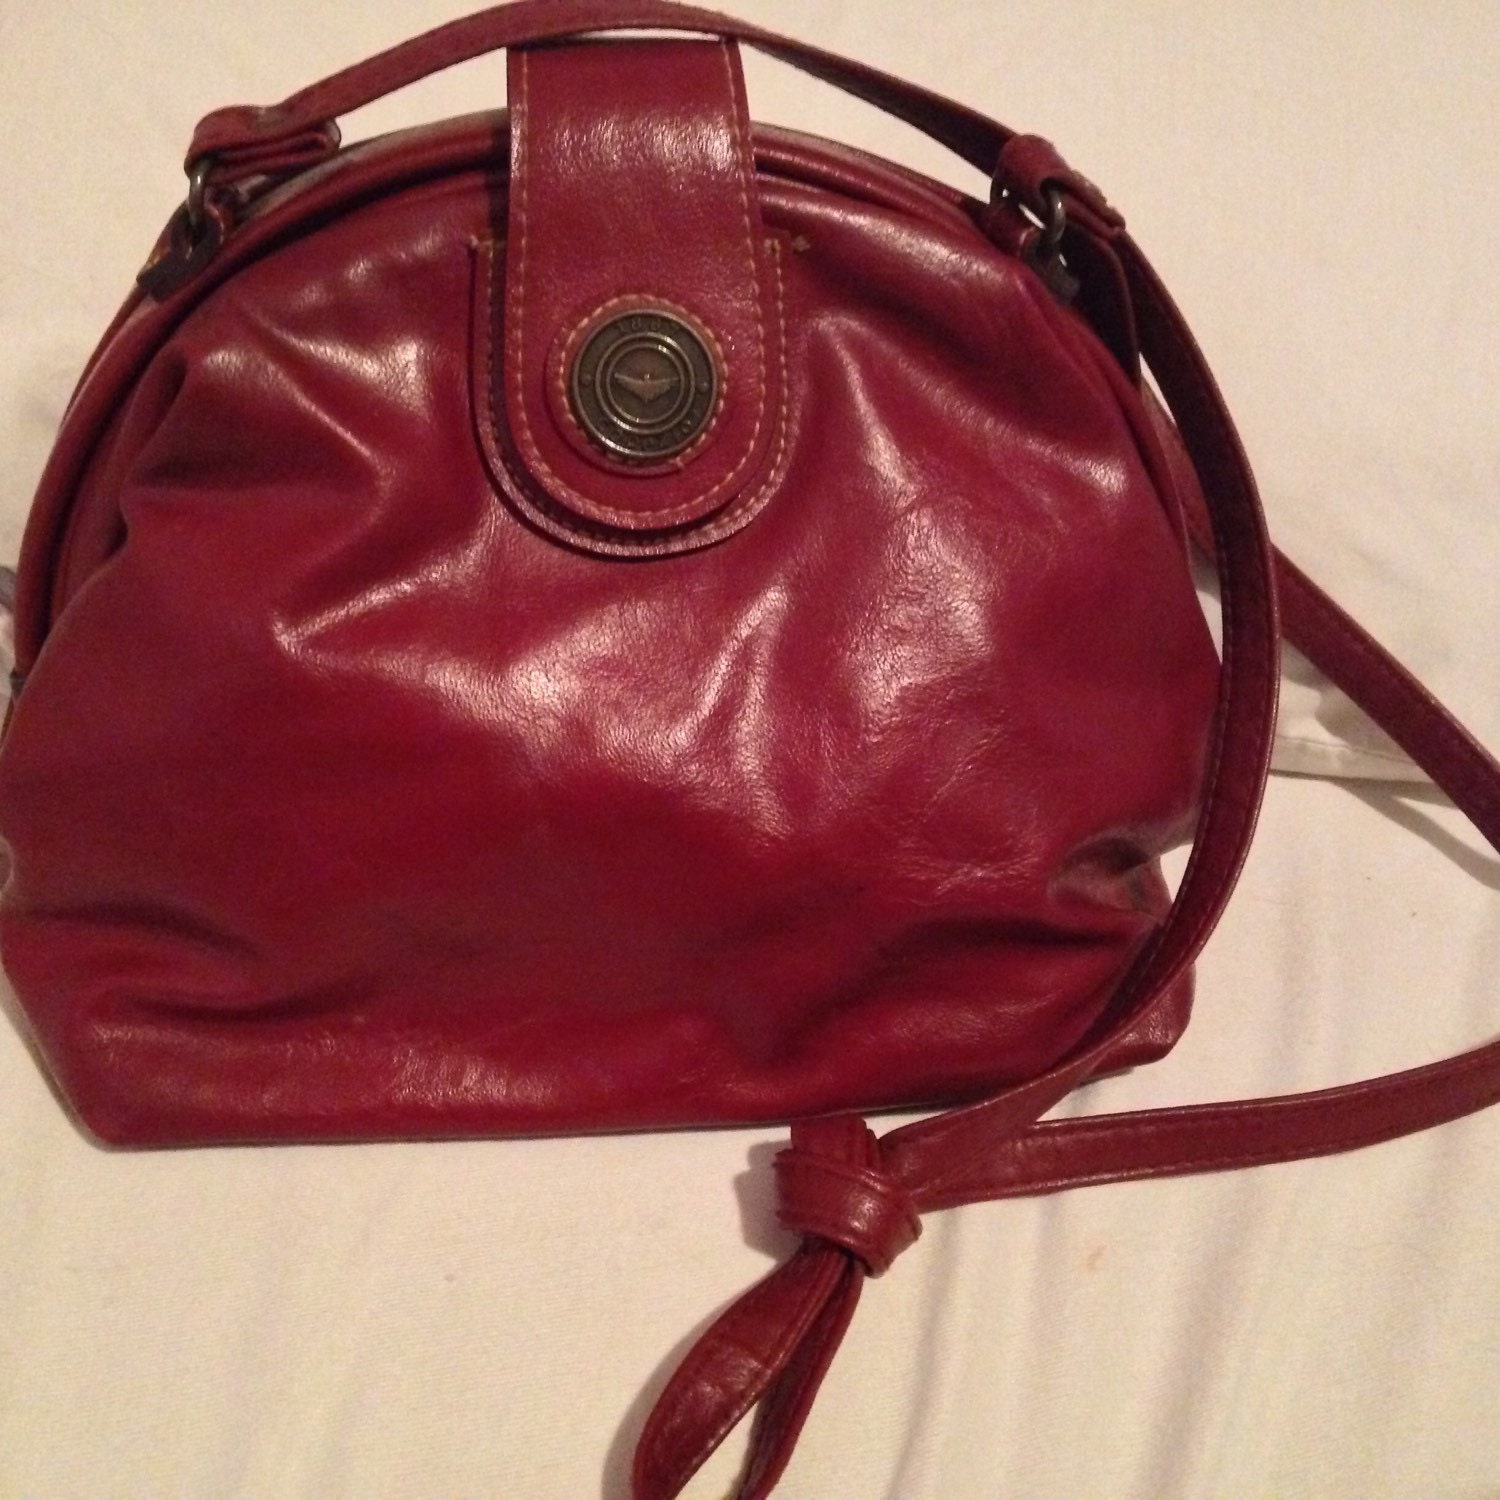 Capezio vintage purse small handbag doctor satchel style red